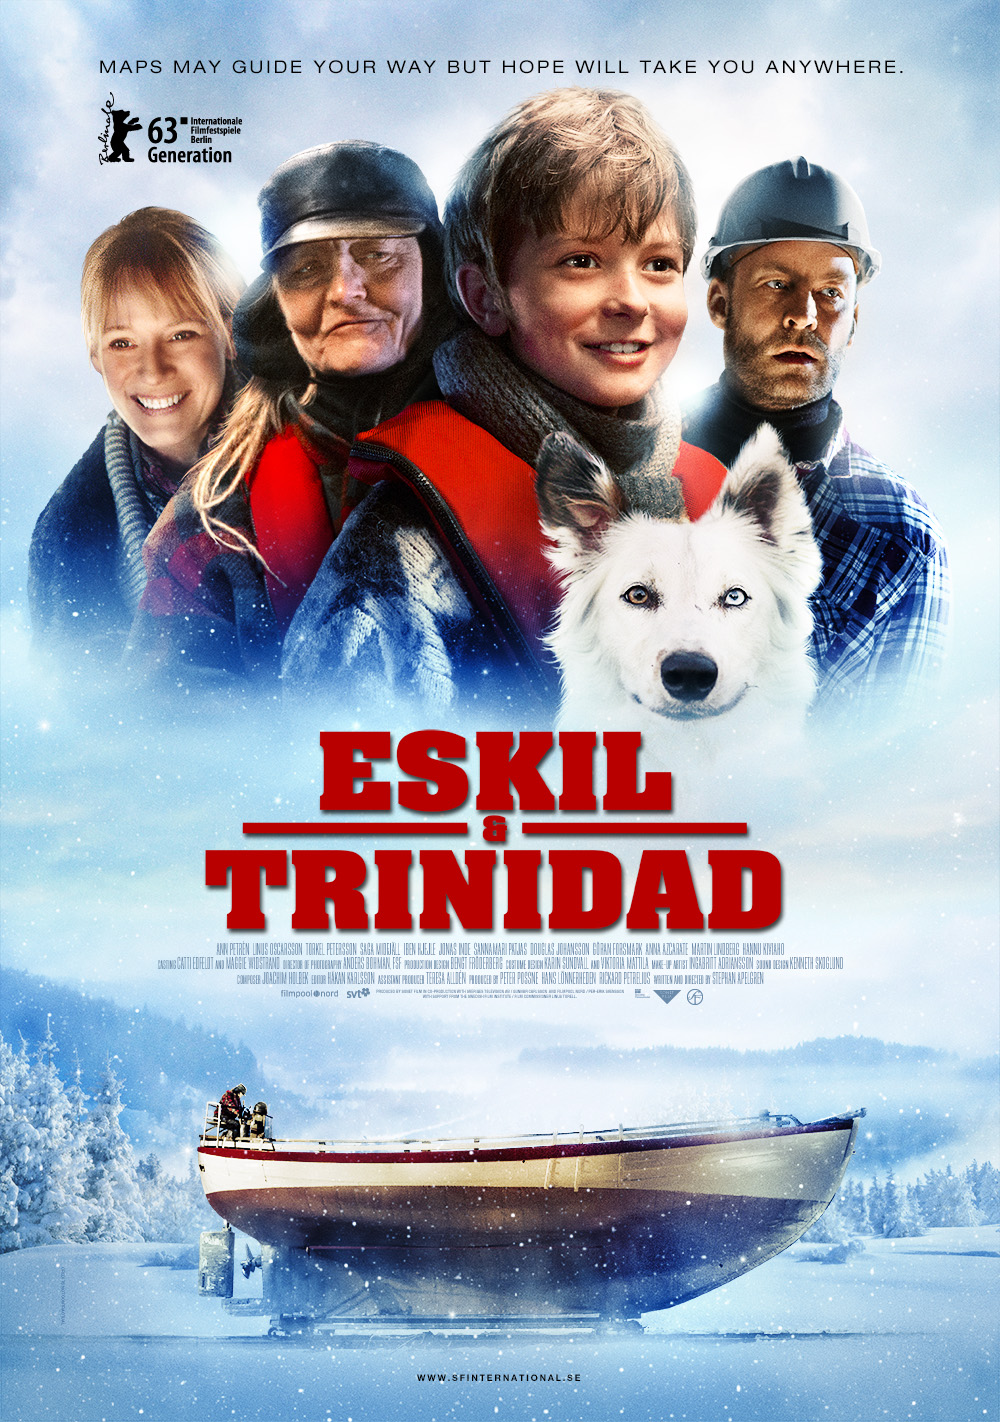 Eskil és Trinidad